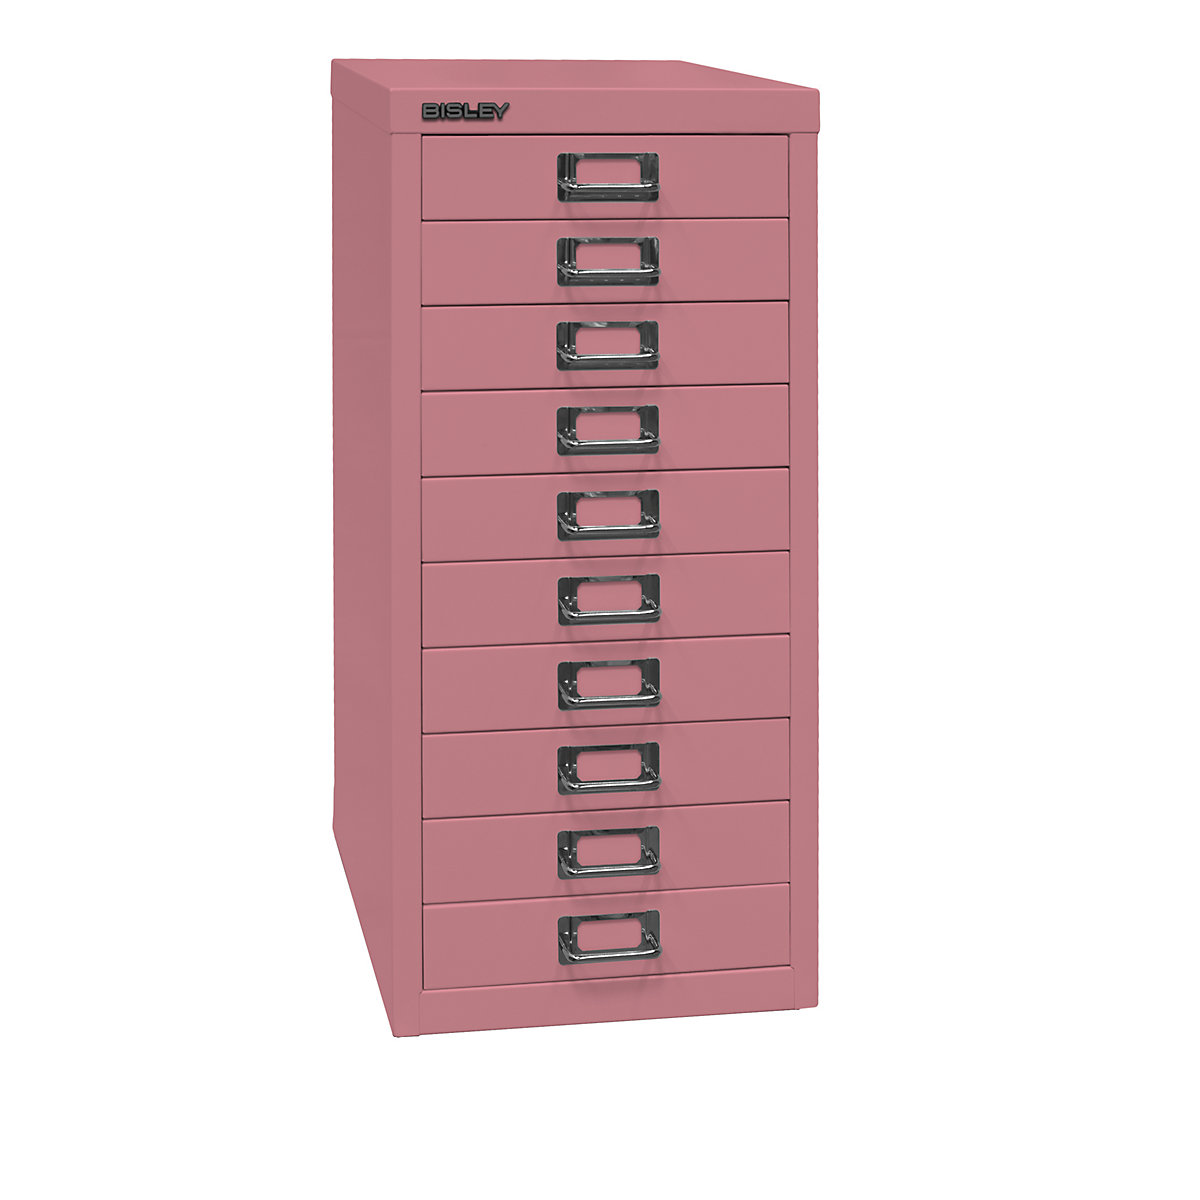 MultiDrawer™ 29-es sorozat – BISLEY, DIN A4, 10 fiók, rózsaszín-5